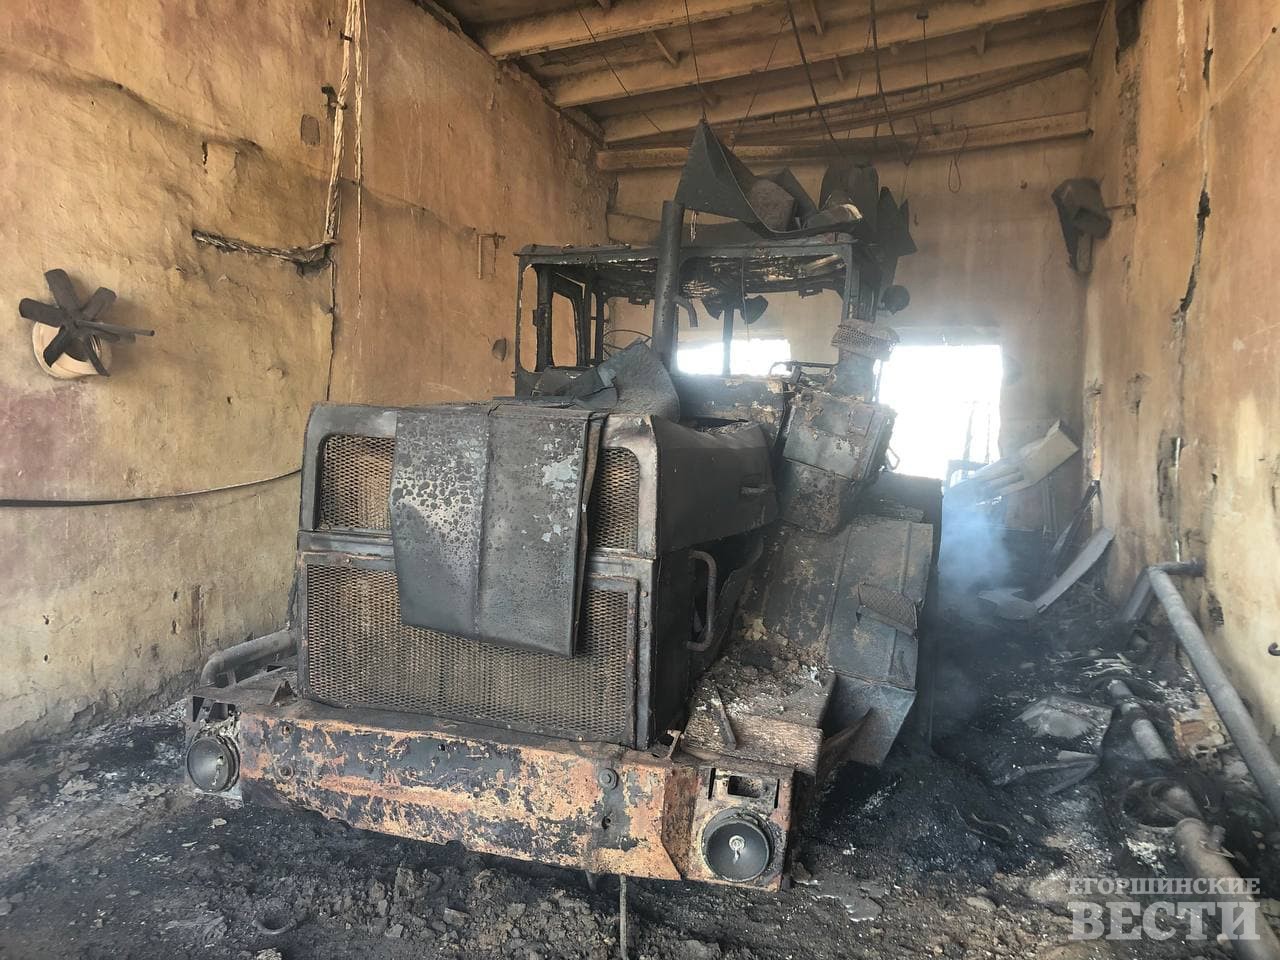 Сгоревший в боксе трактор, восстановлению не подлежит. Фото: Сергей Костромин, 